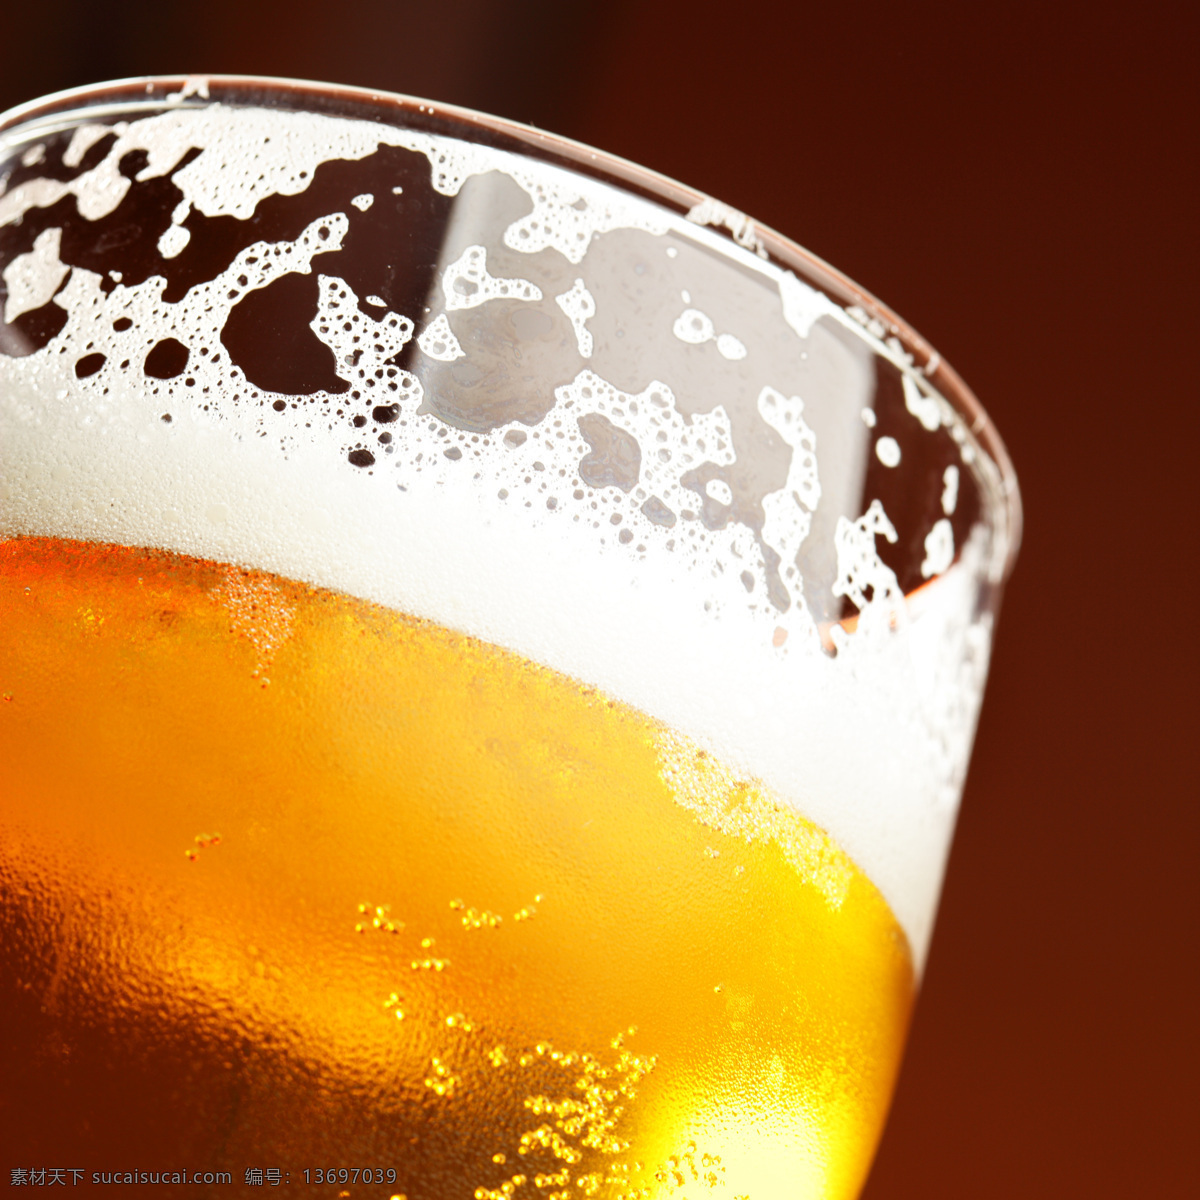 一杯啤酒 啤酒 杯子 玻璃杯子 果蔬 休闲饮品 健康食品 酒水饮料 餐饮美食 白色